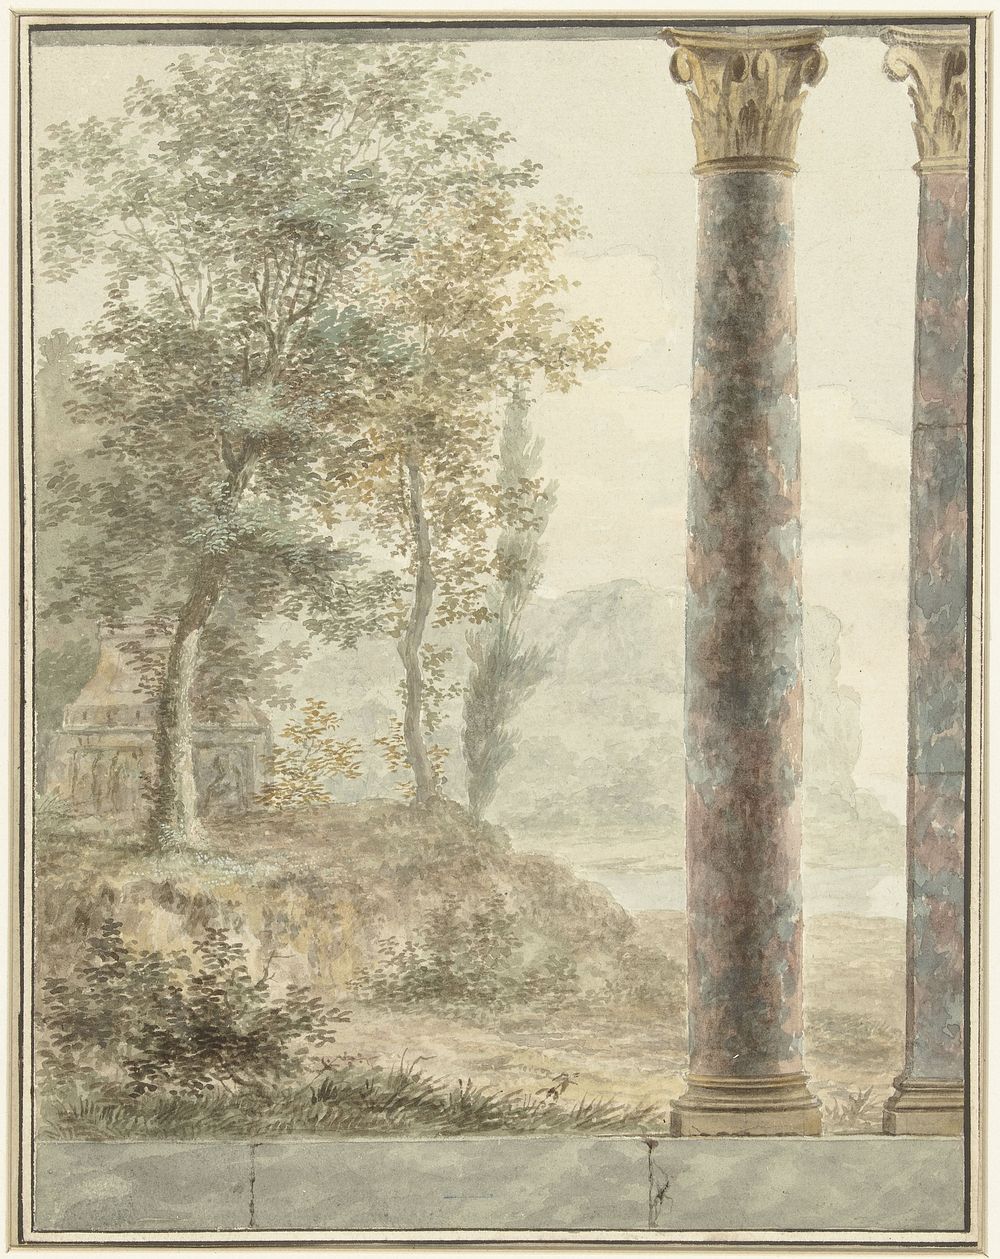 Ontwerp voor kamerbeschildering met landschap met fragment van antiek bouwwerk (1700 - 1800) by anonymous and Josephus…